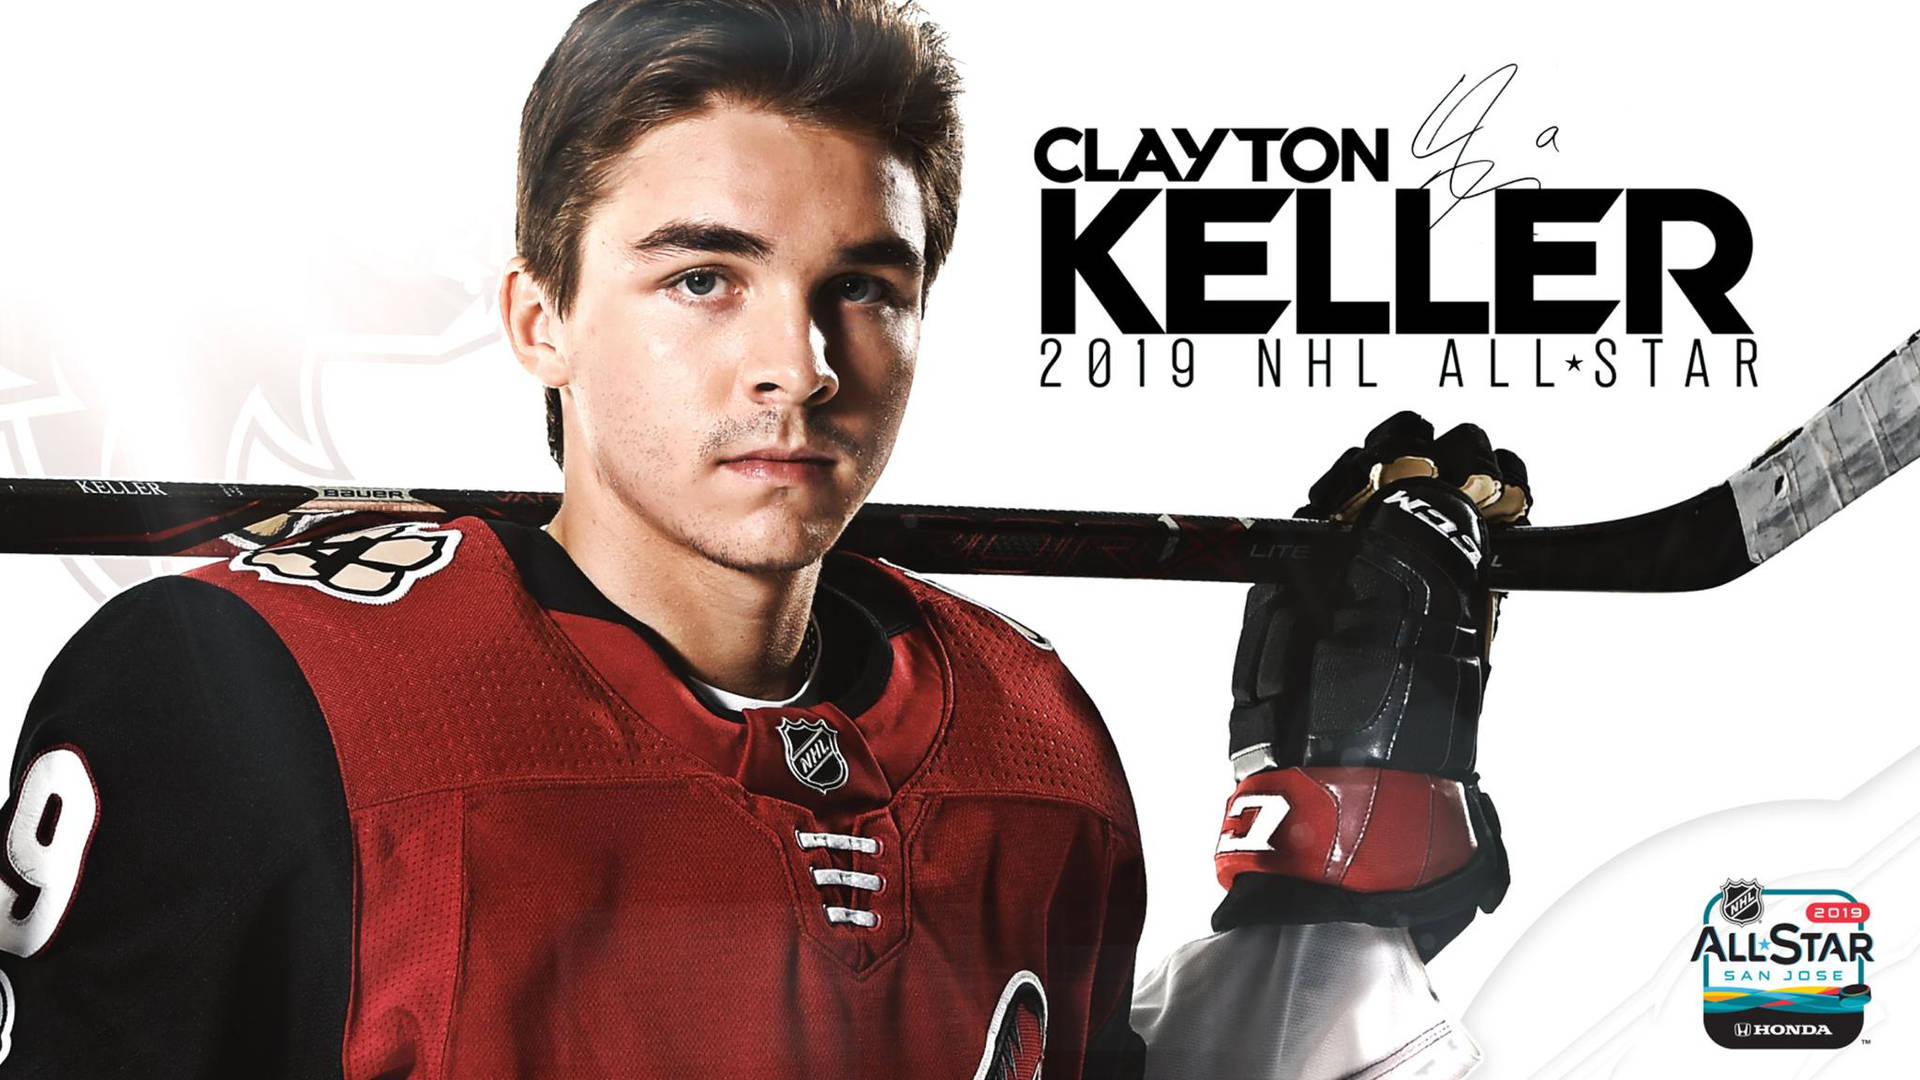 Clayton Keller 2019 NHL All-Star Game plakat Wallpaper